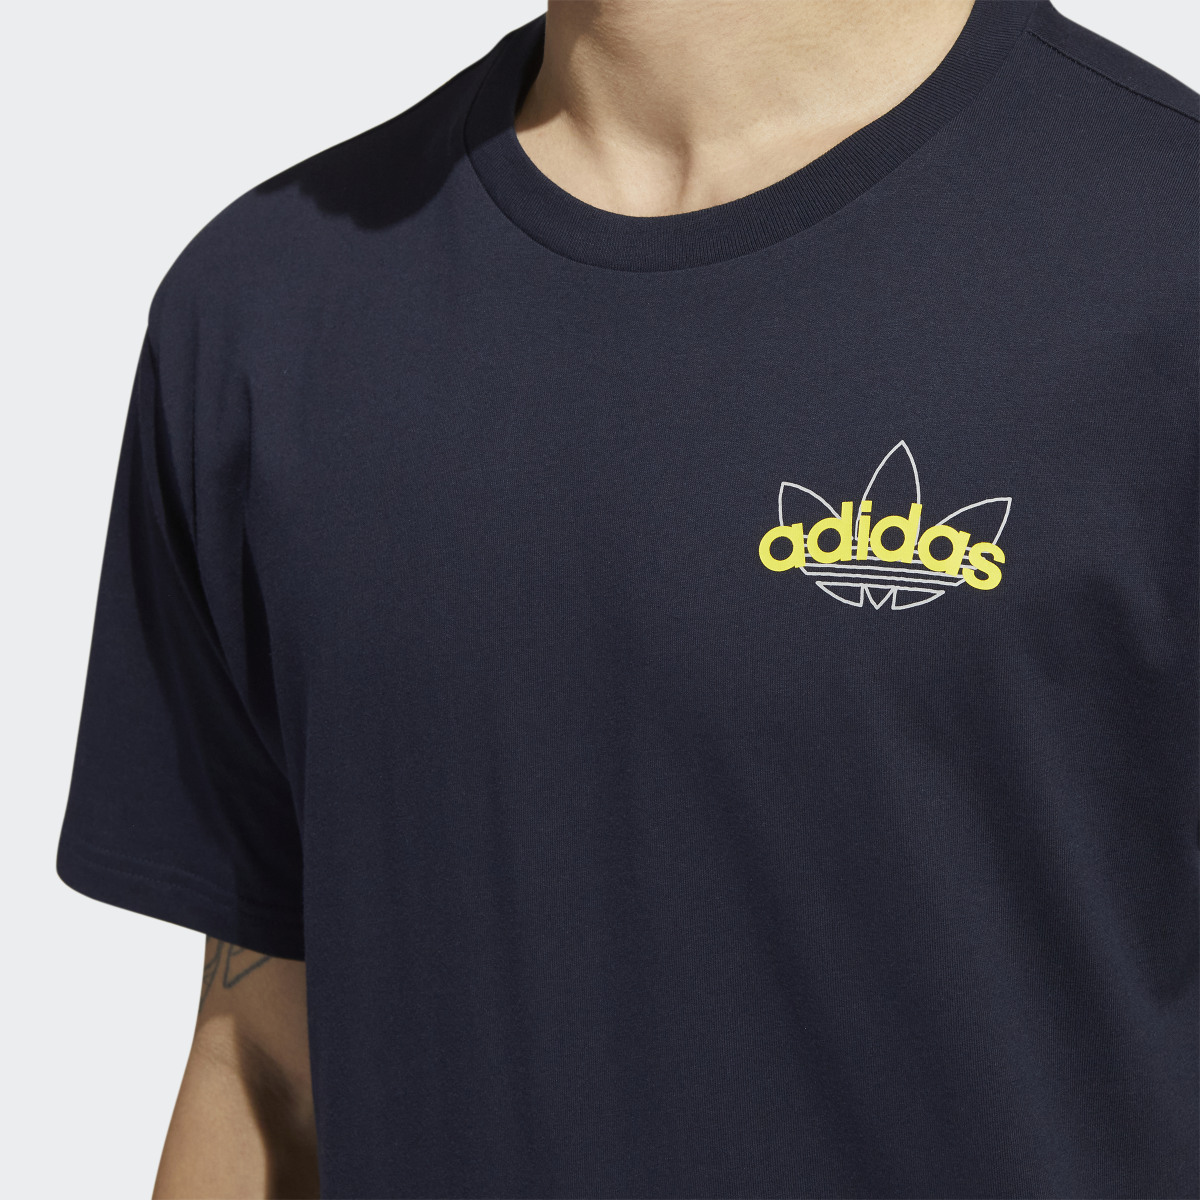 Adidas Athletic Club T-Shirt. 6